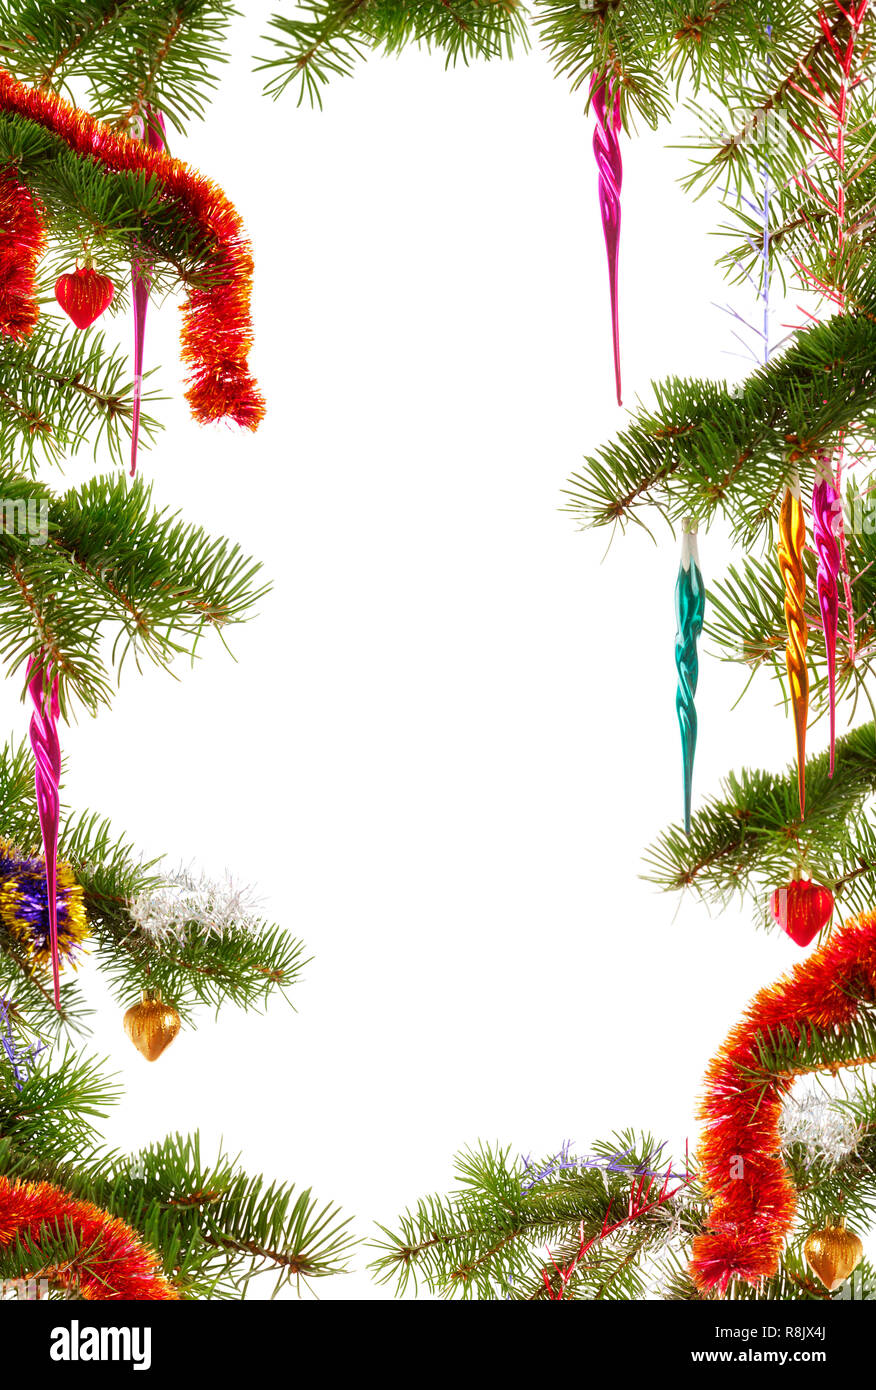 Sfondi Fotografici Natalizi.Colorate A Tema Natalizio Telaio Realizzato Da Abete Rami Decorate Con Ornamenti Natale Su Sfondo Bianco Foto Stock Alamy